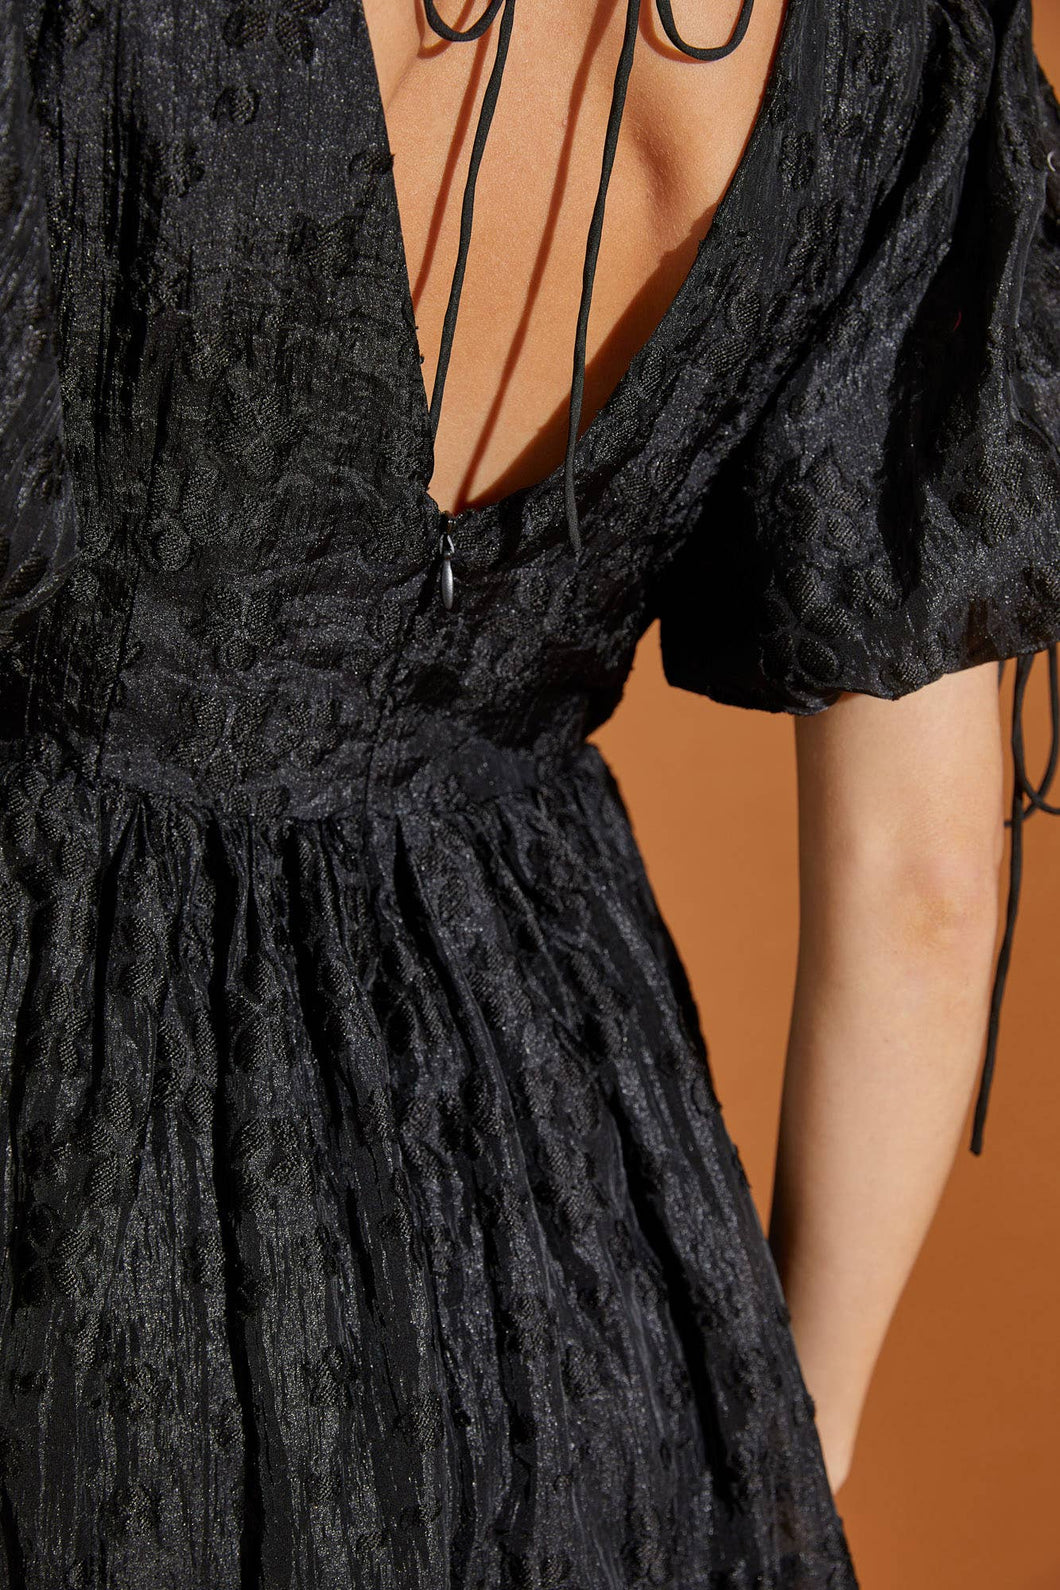 Floral Lace Detail Lace- Up Women's Dress: BLACK